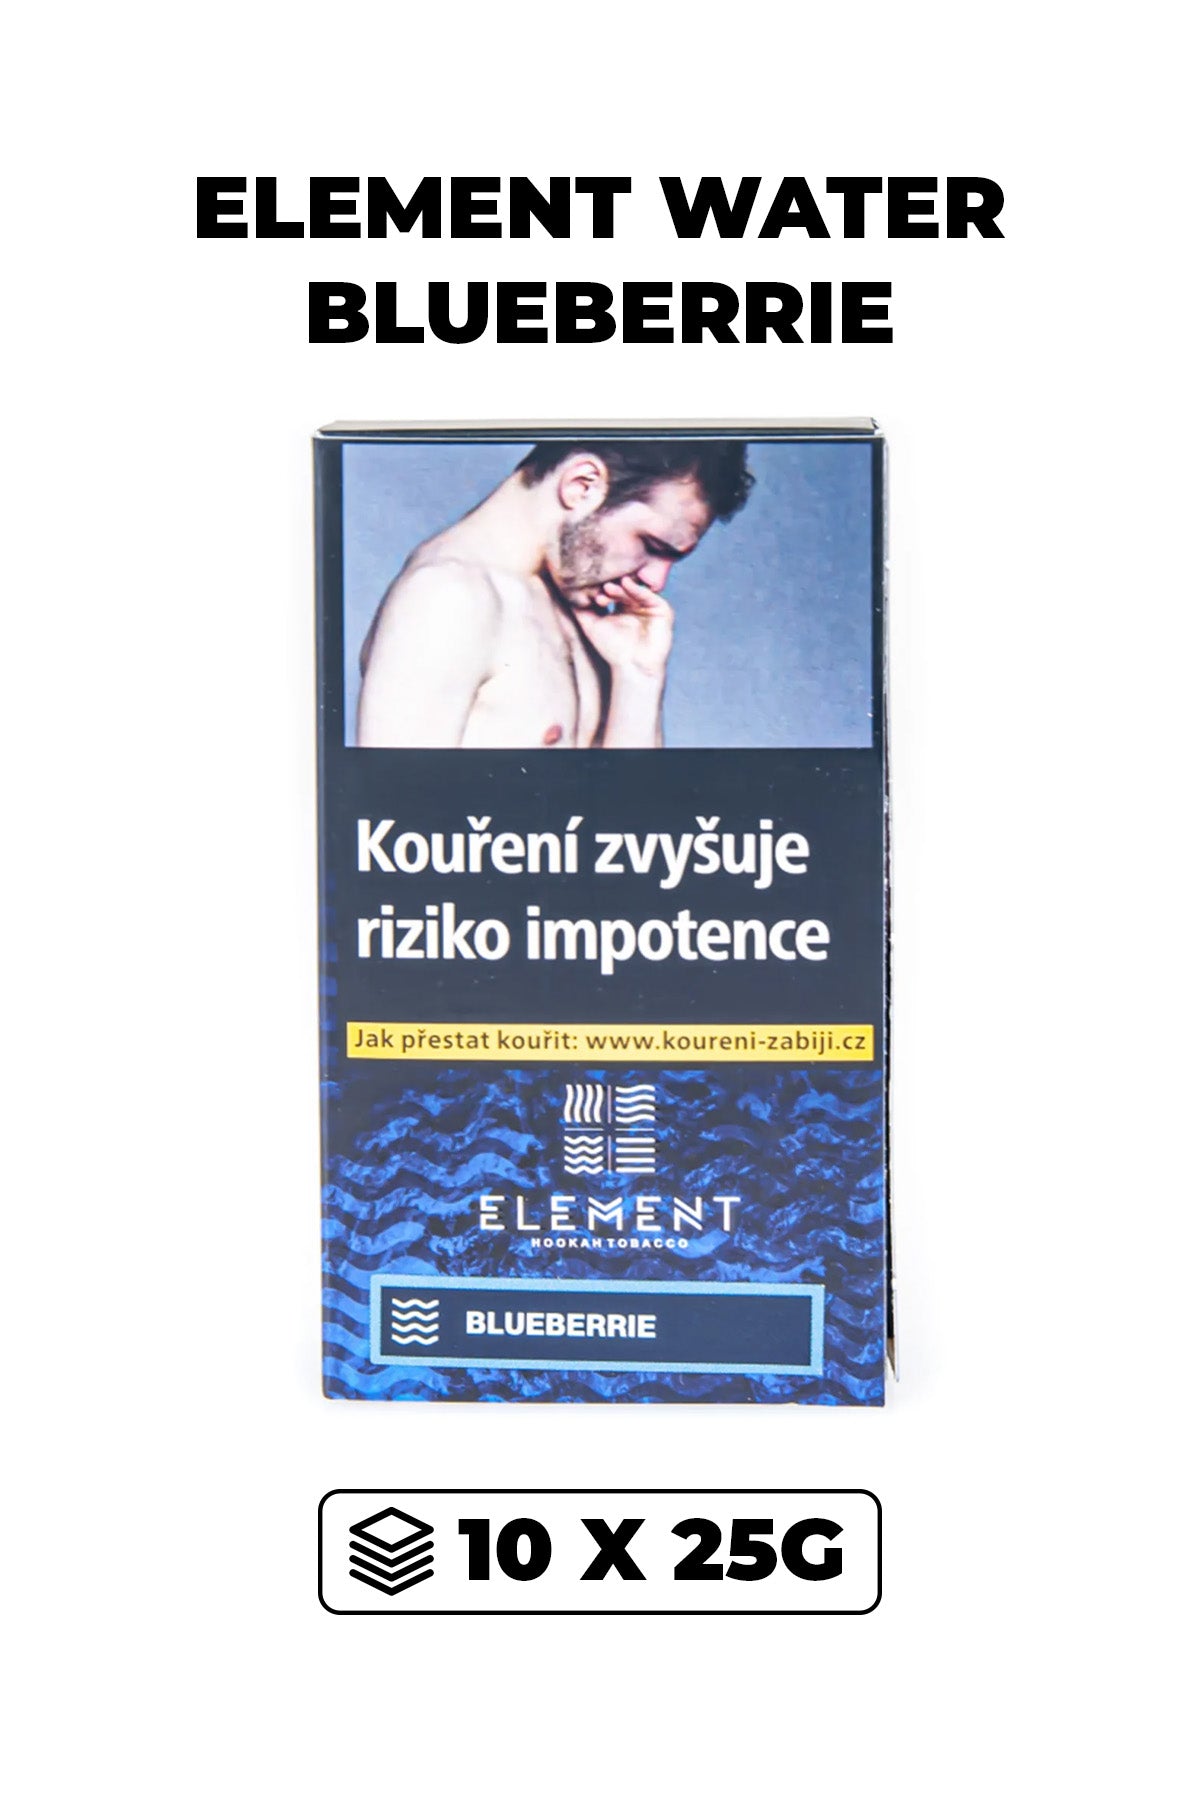 Tabák - Element Water 10x25g - Blueberrie